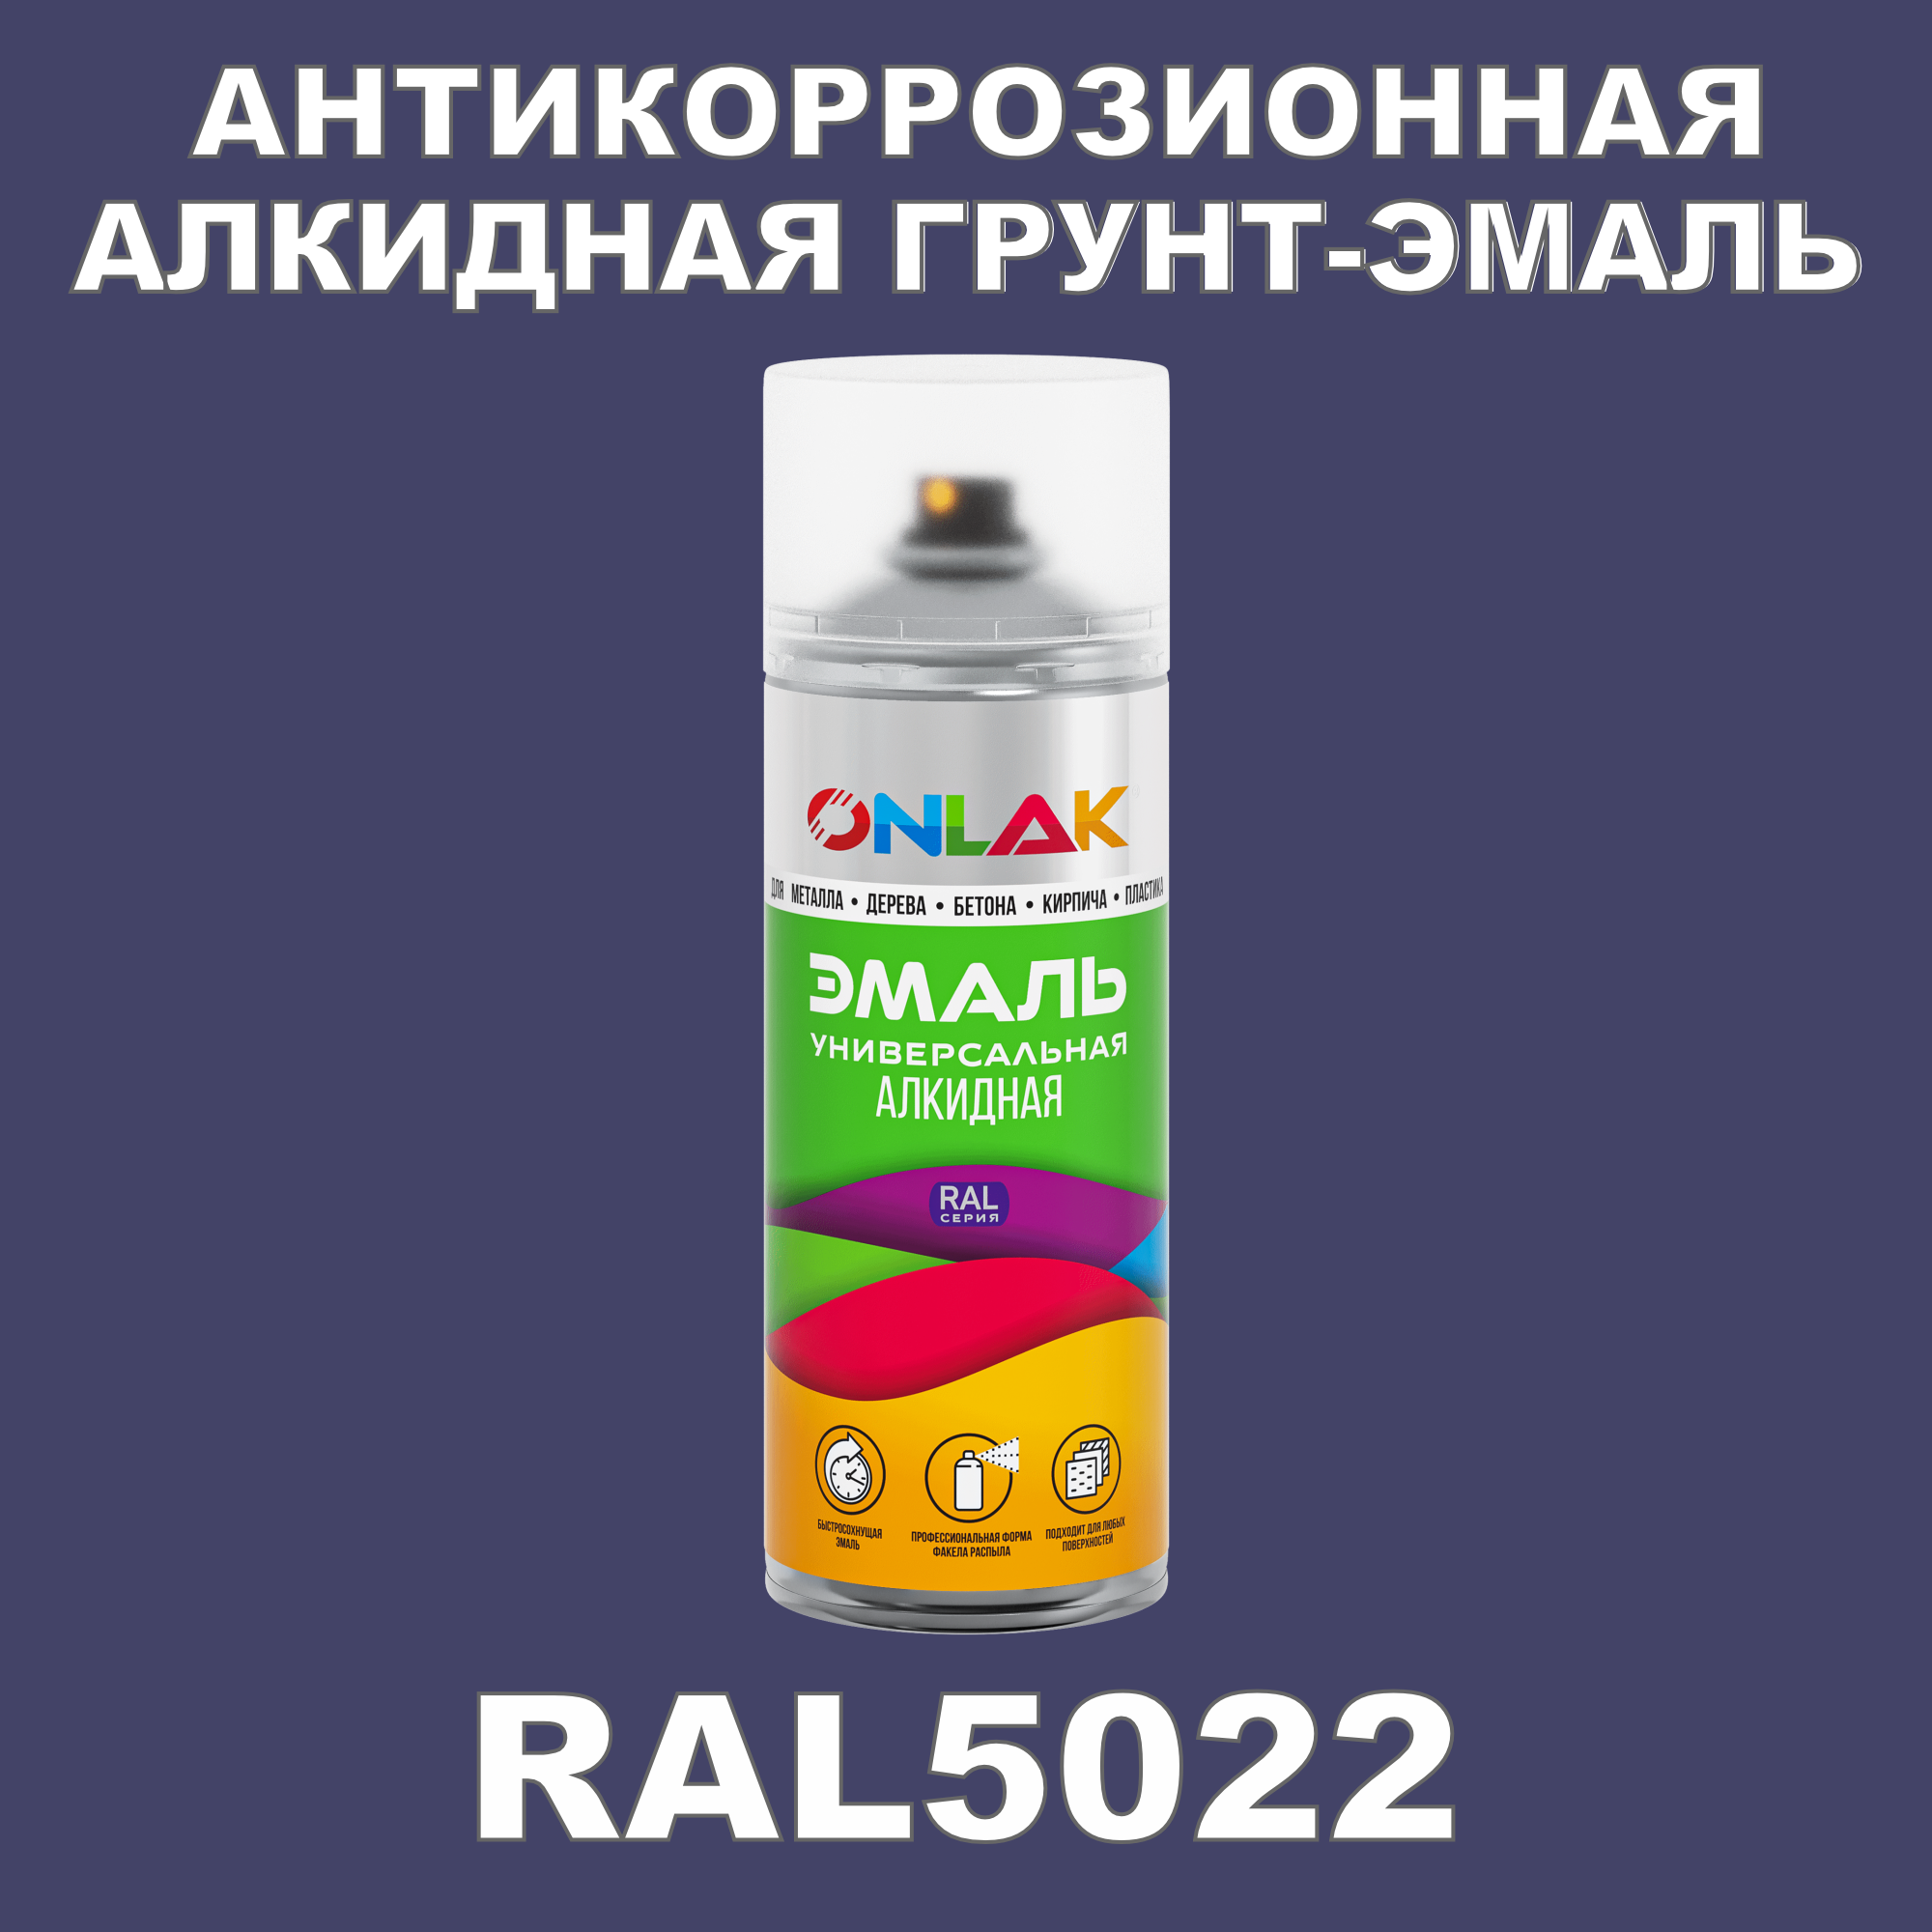 Антикоррозионная грунт-эмаль ONLAK RAL5022 матовая для металла и защиты от ржавчины